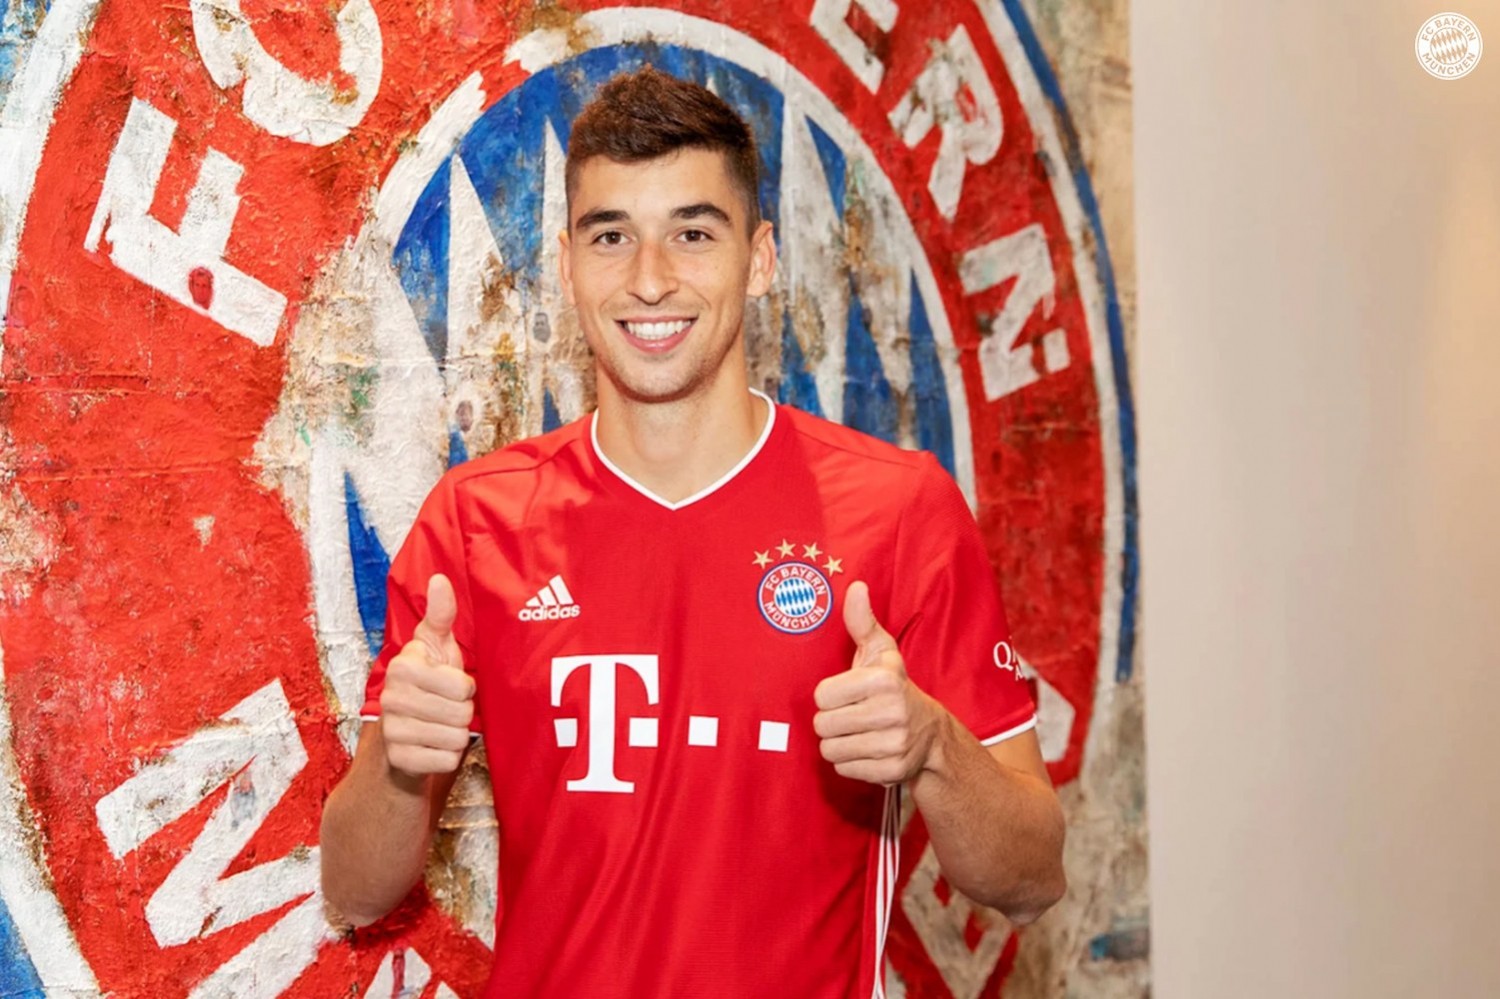 Bayern Monachium: Dwóch faworytów do styczniowego transferu Marca Roki